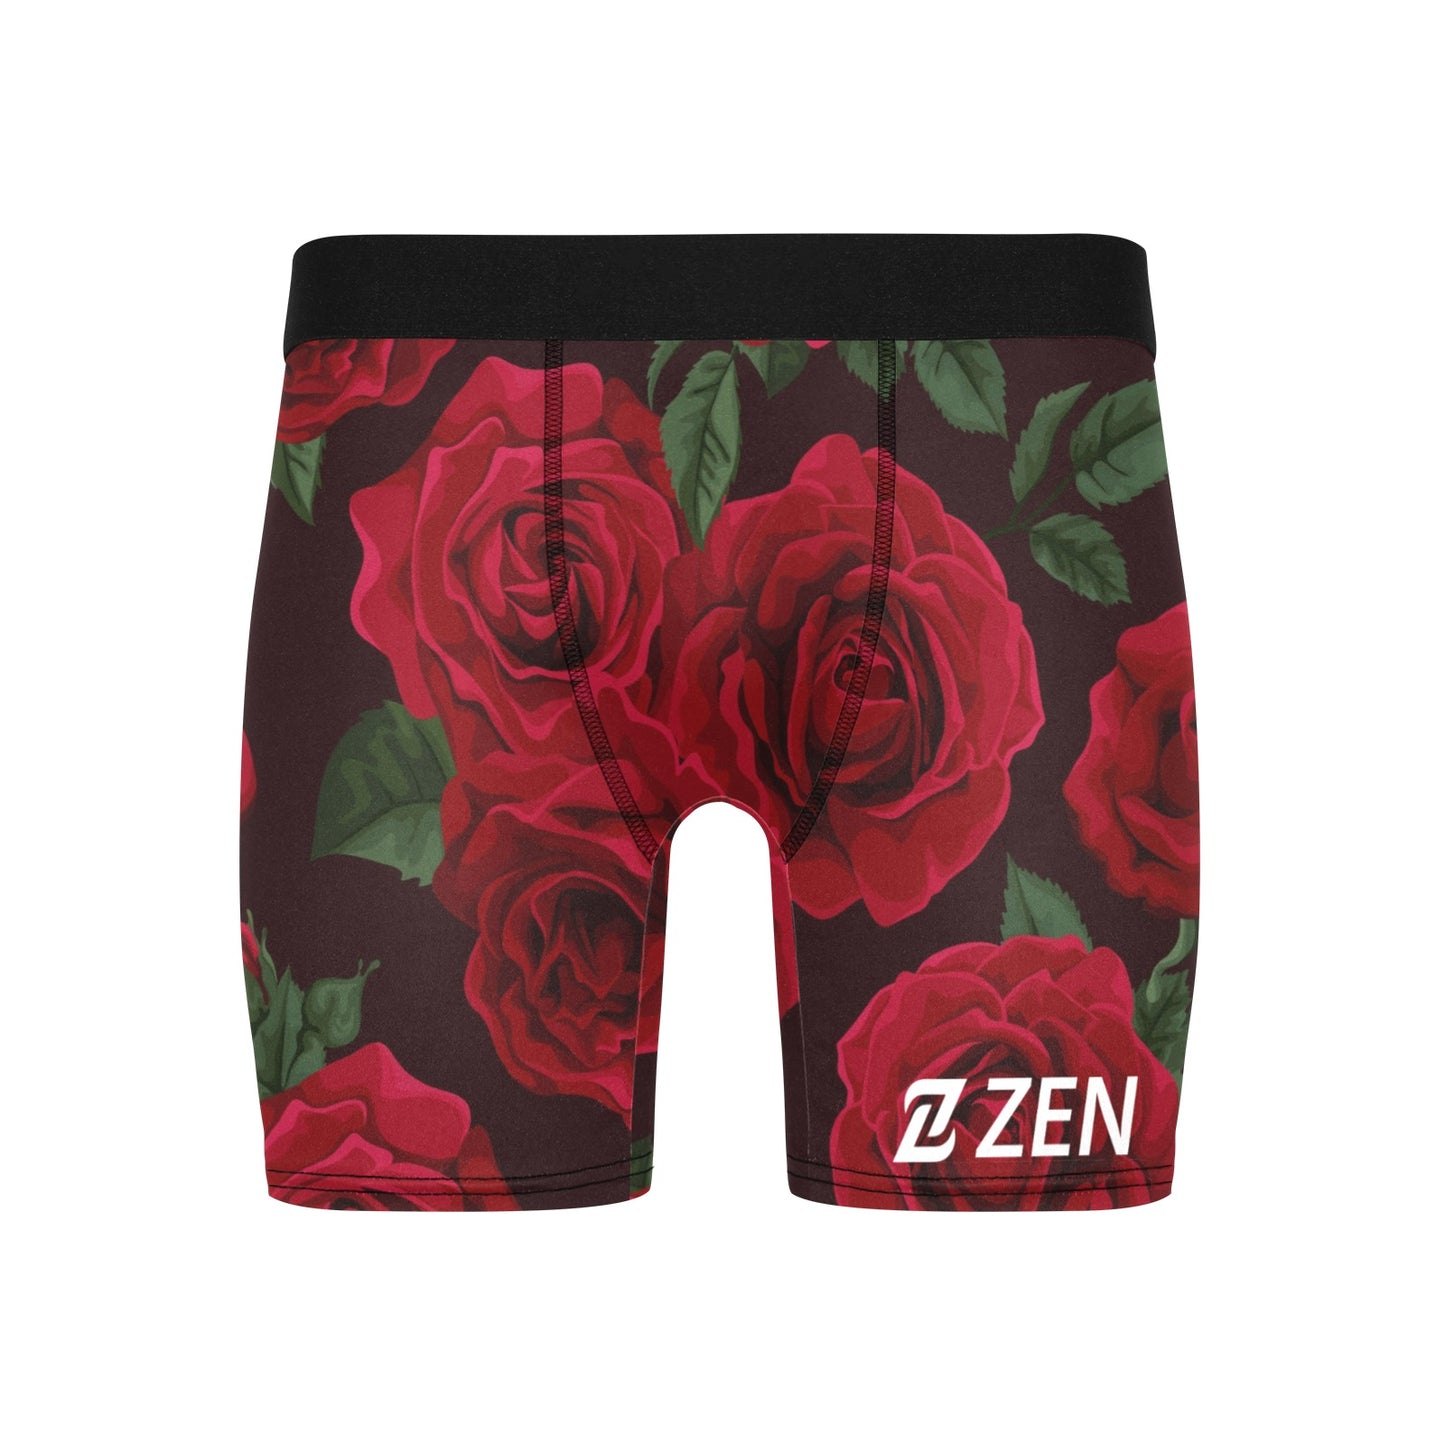 Zen Boxers Long - Roses